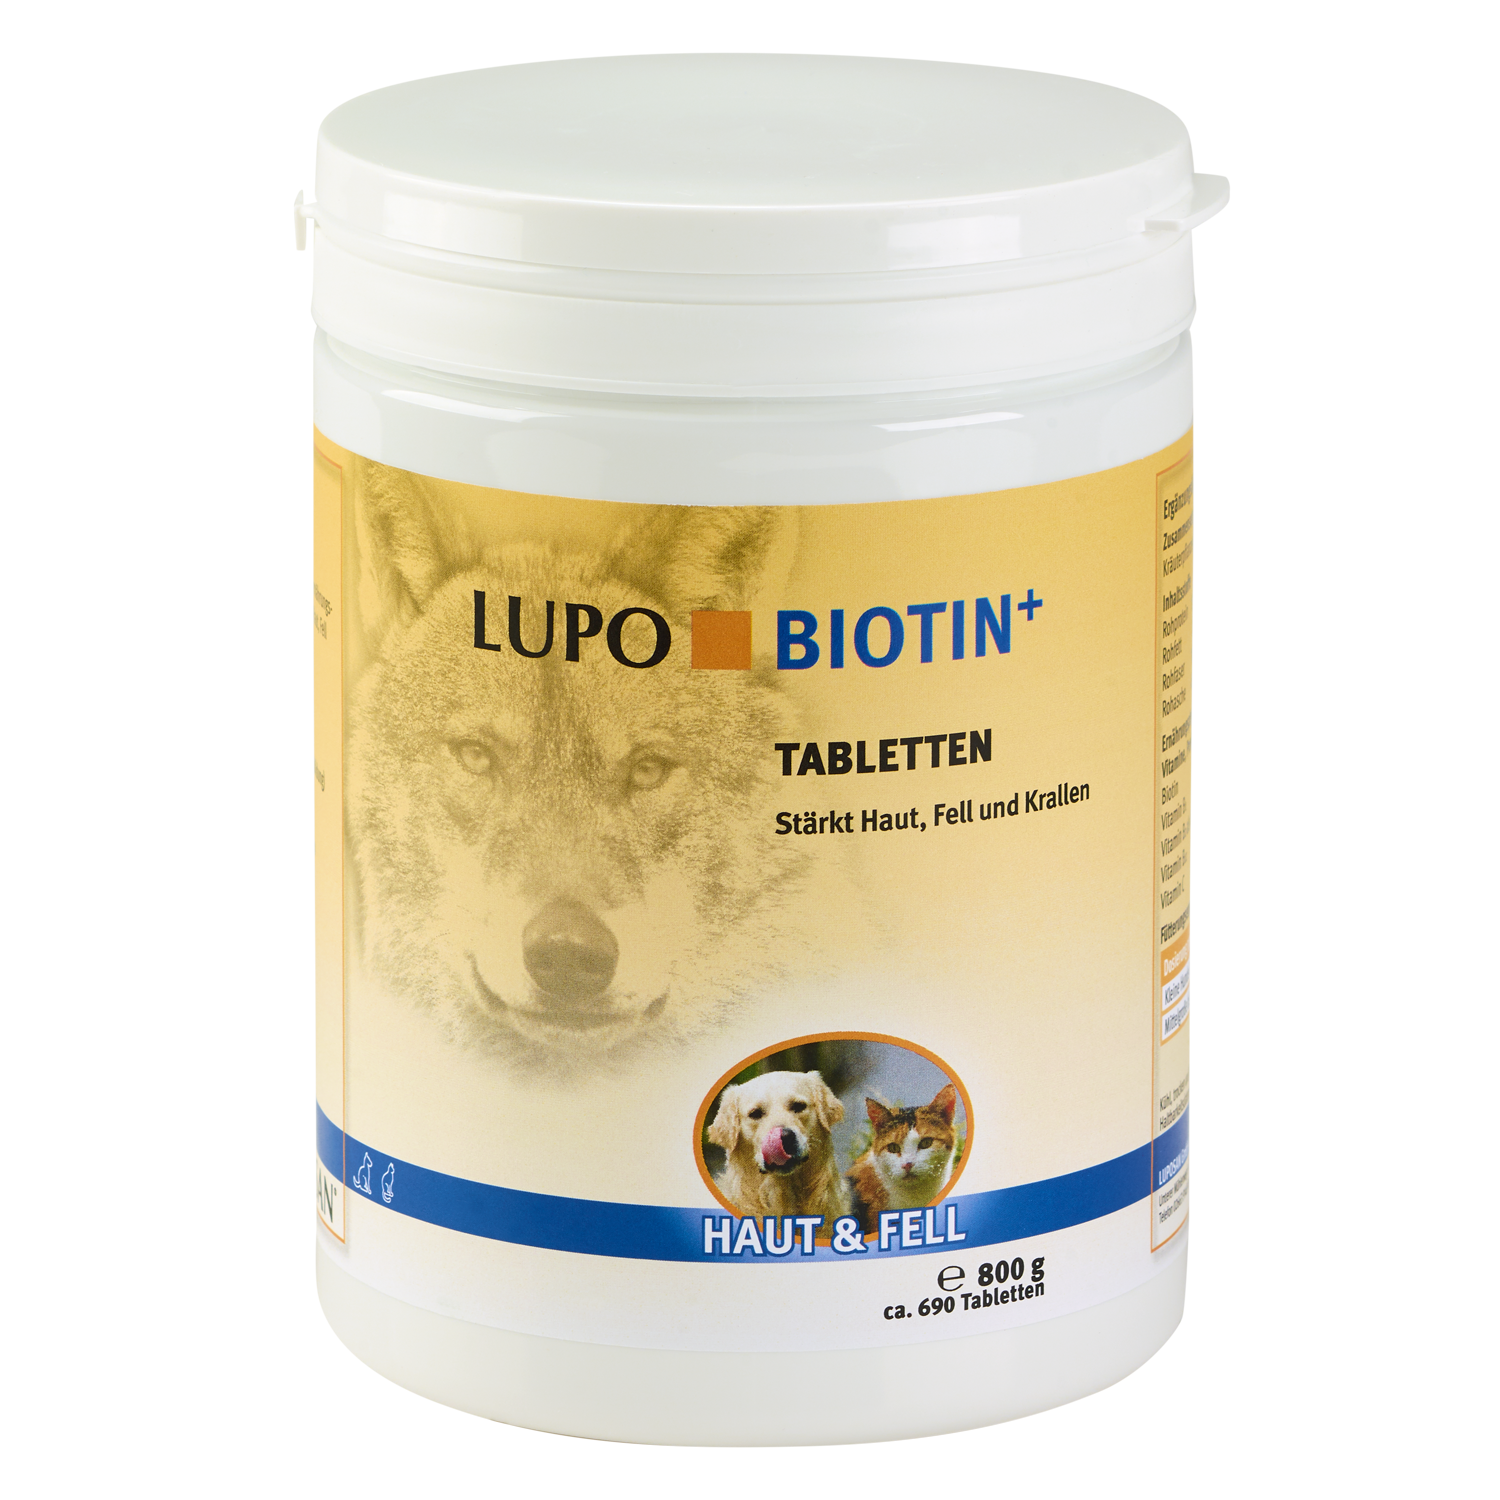 LUPO Biotin+ 800 g